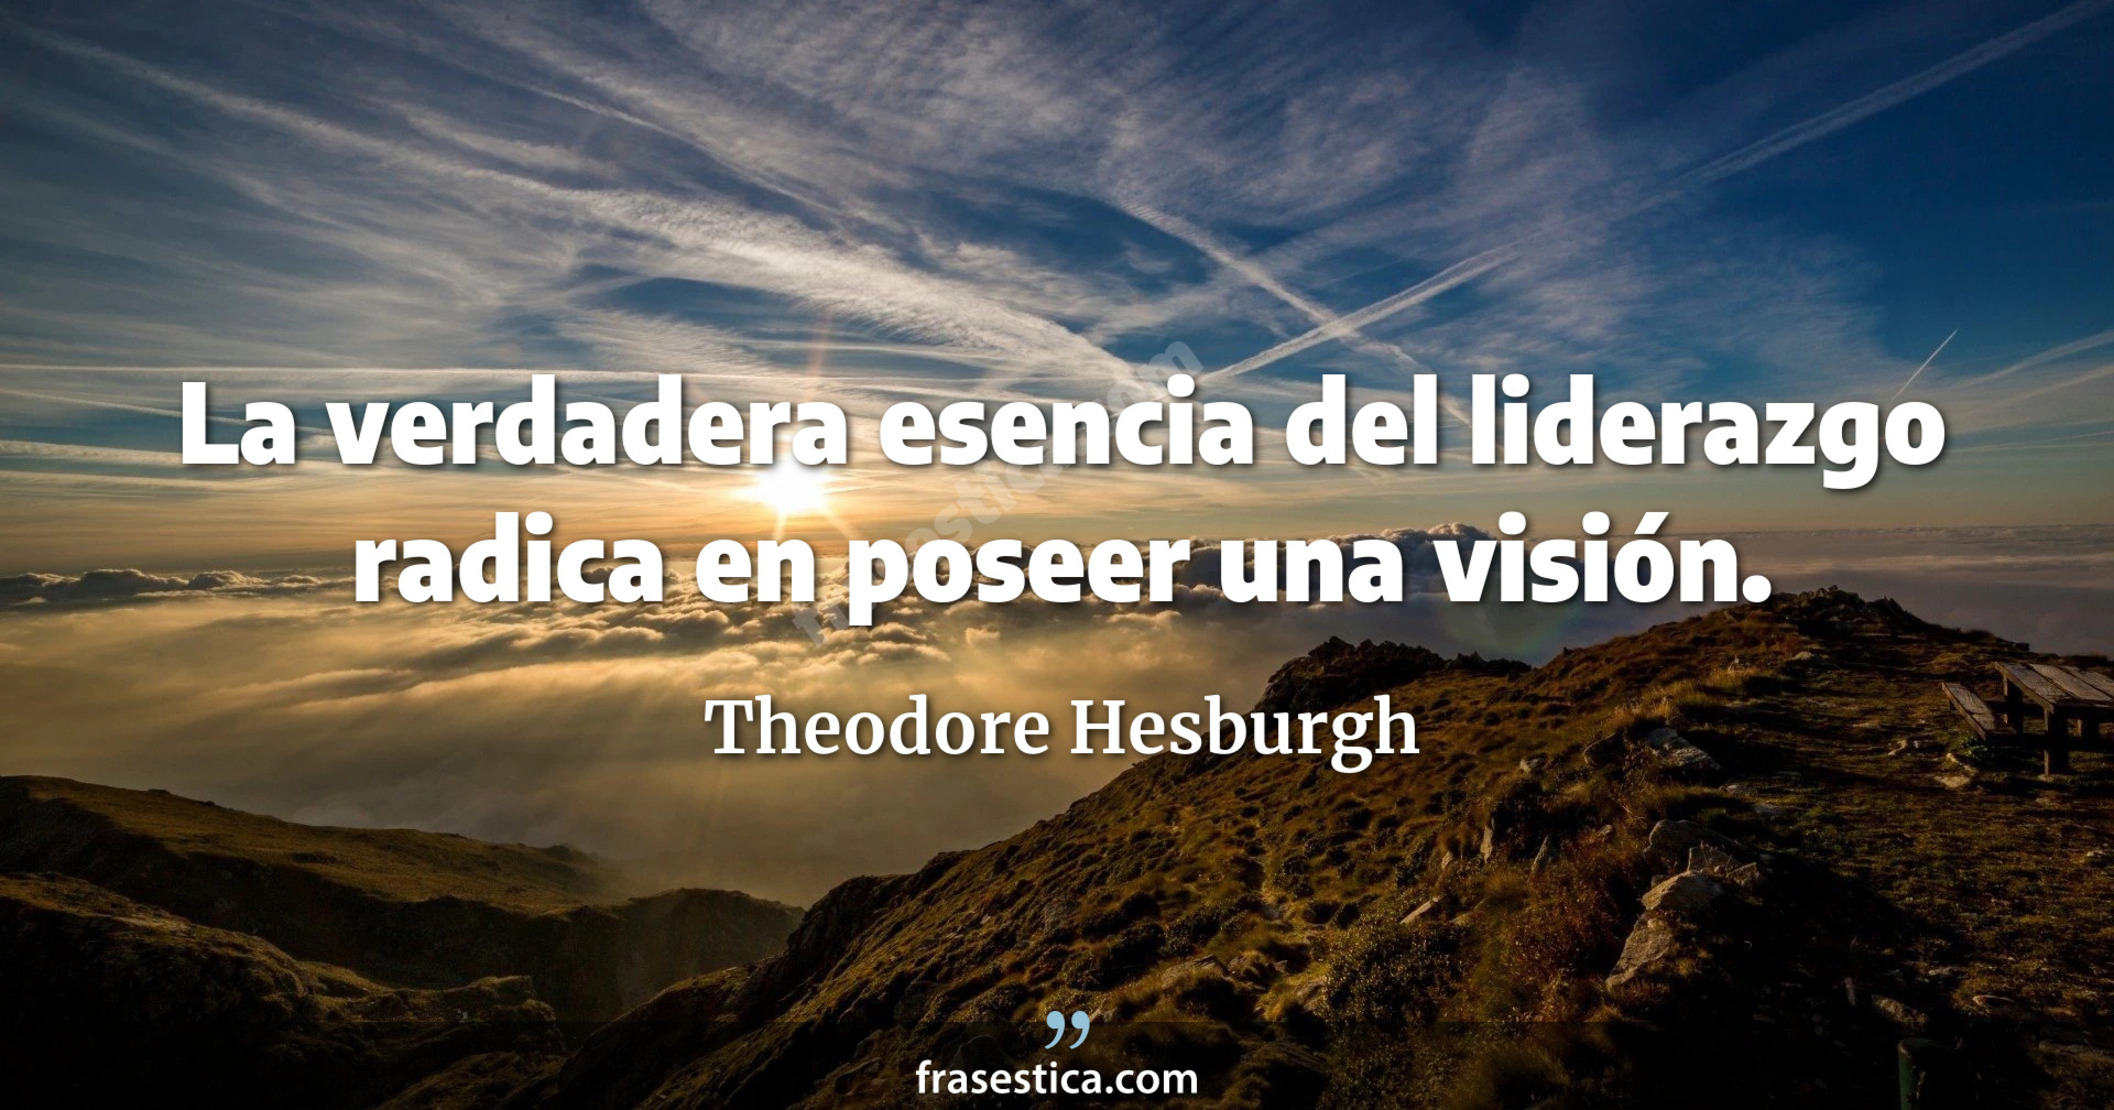 La verdadera esencia del liderazgo radica en poseer una visión. - Theodore Hesburgh